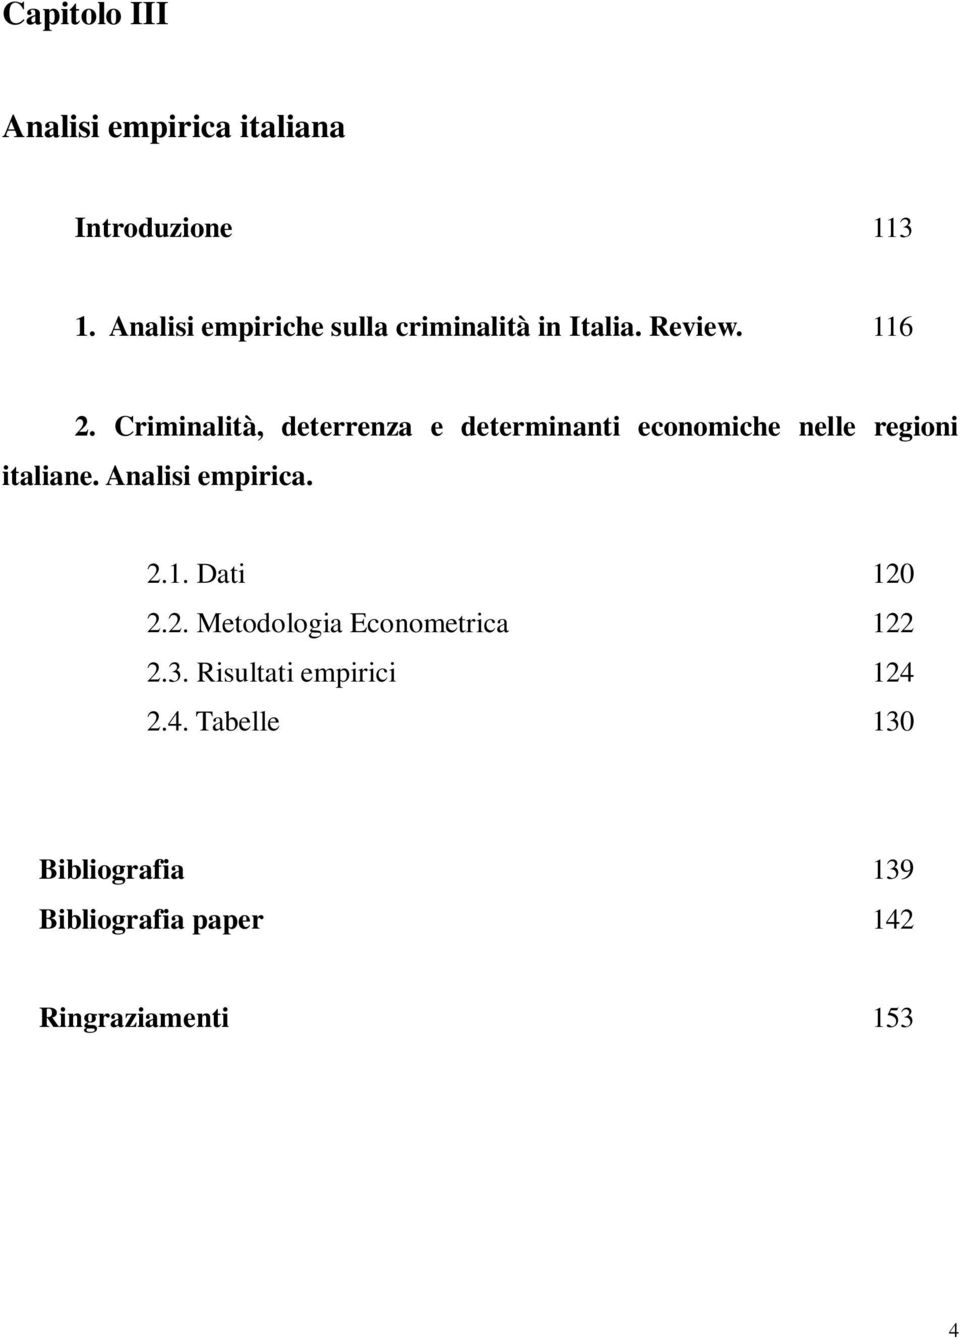 Criminalità, deterrenza e determinanti economiche nelle regioni italiane. Analisi empirica.